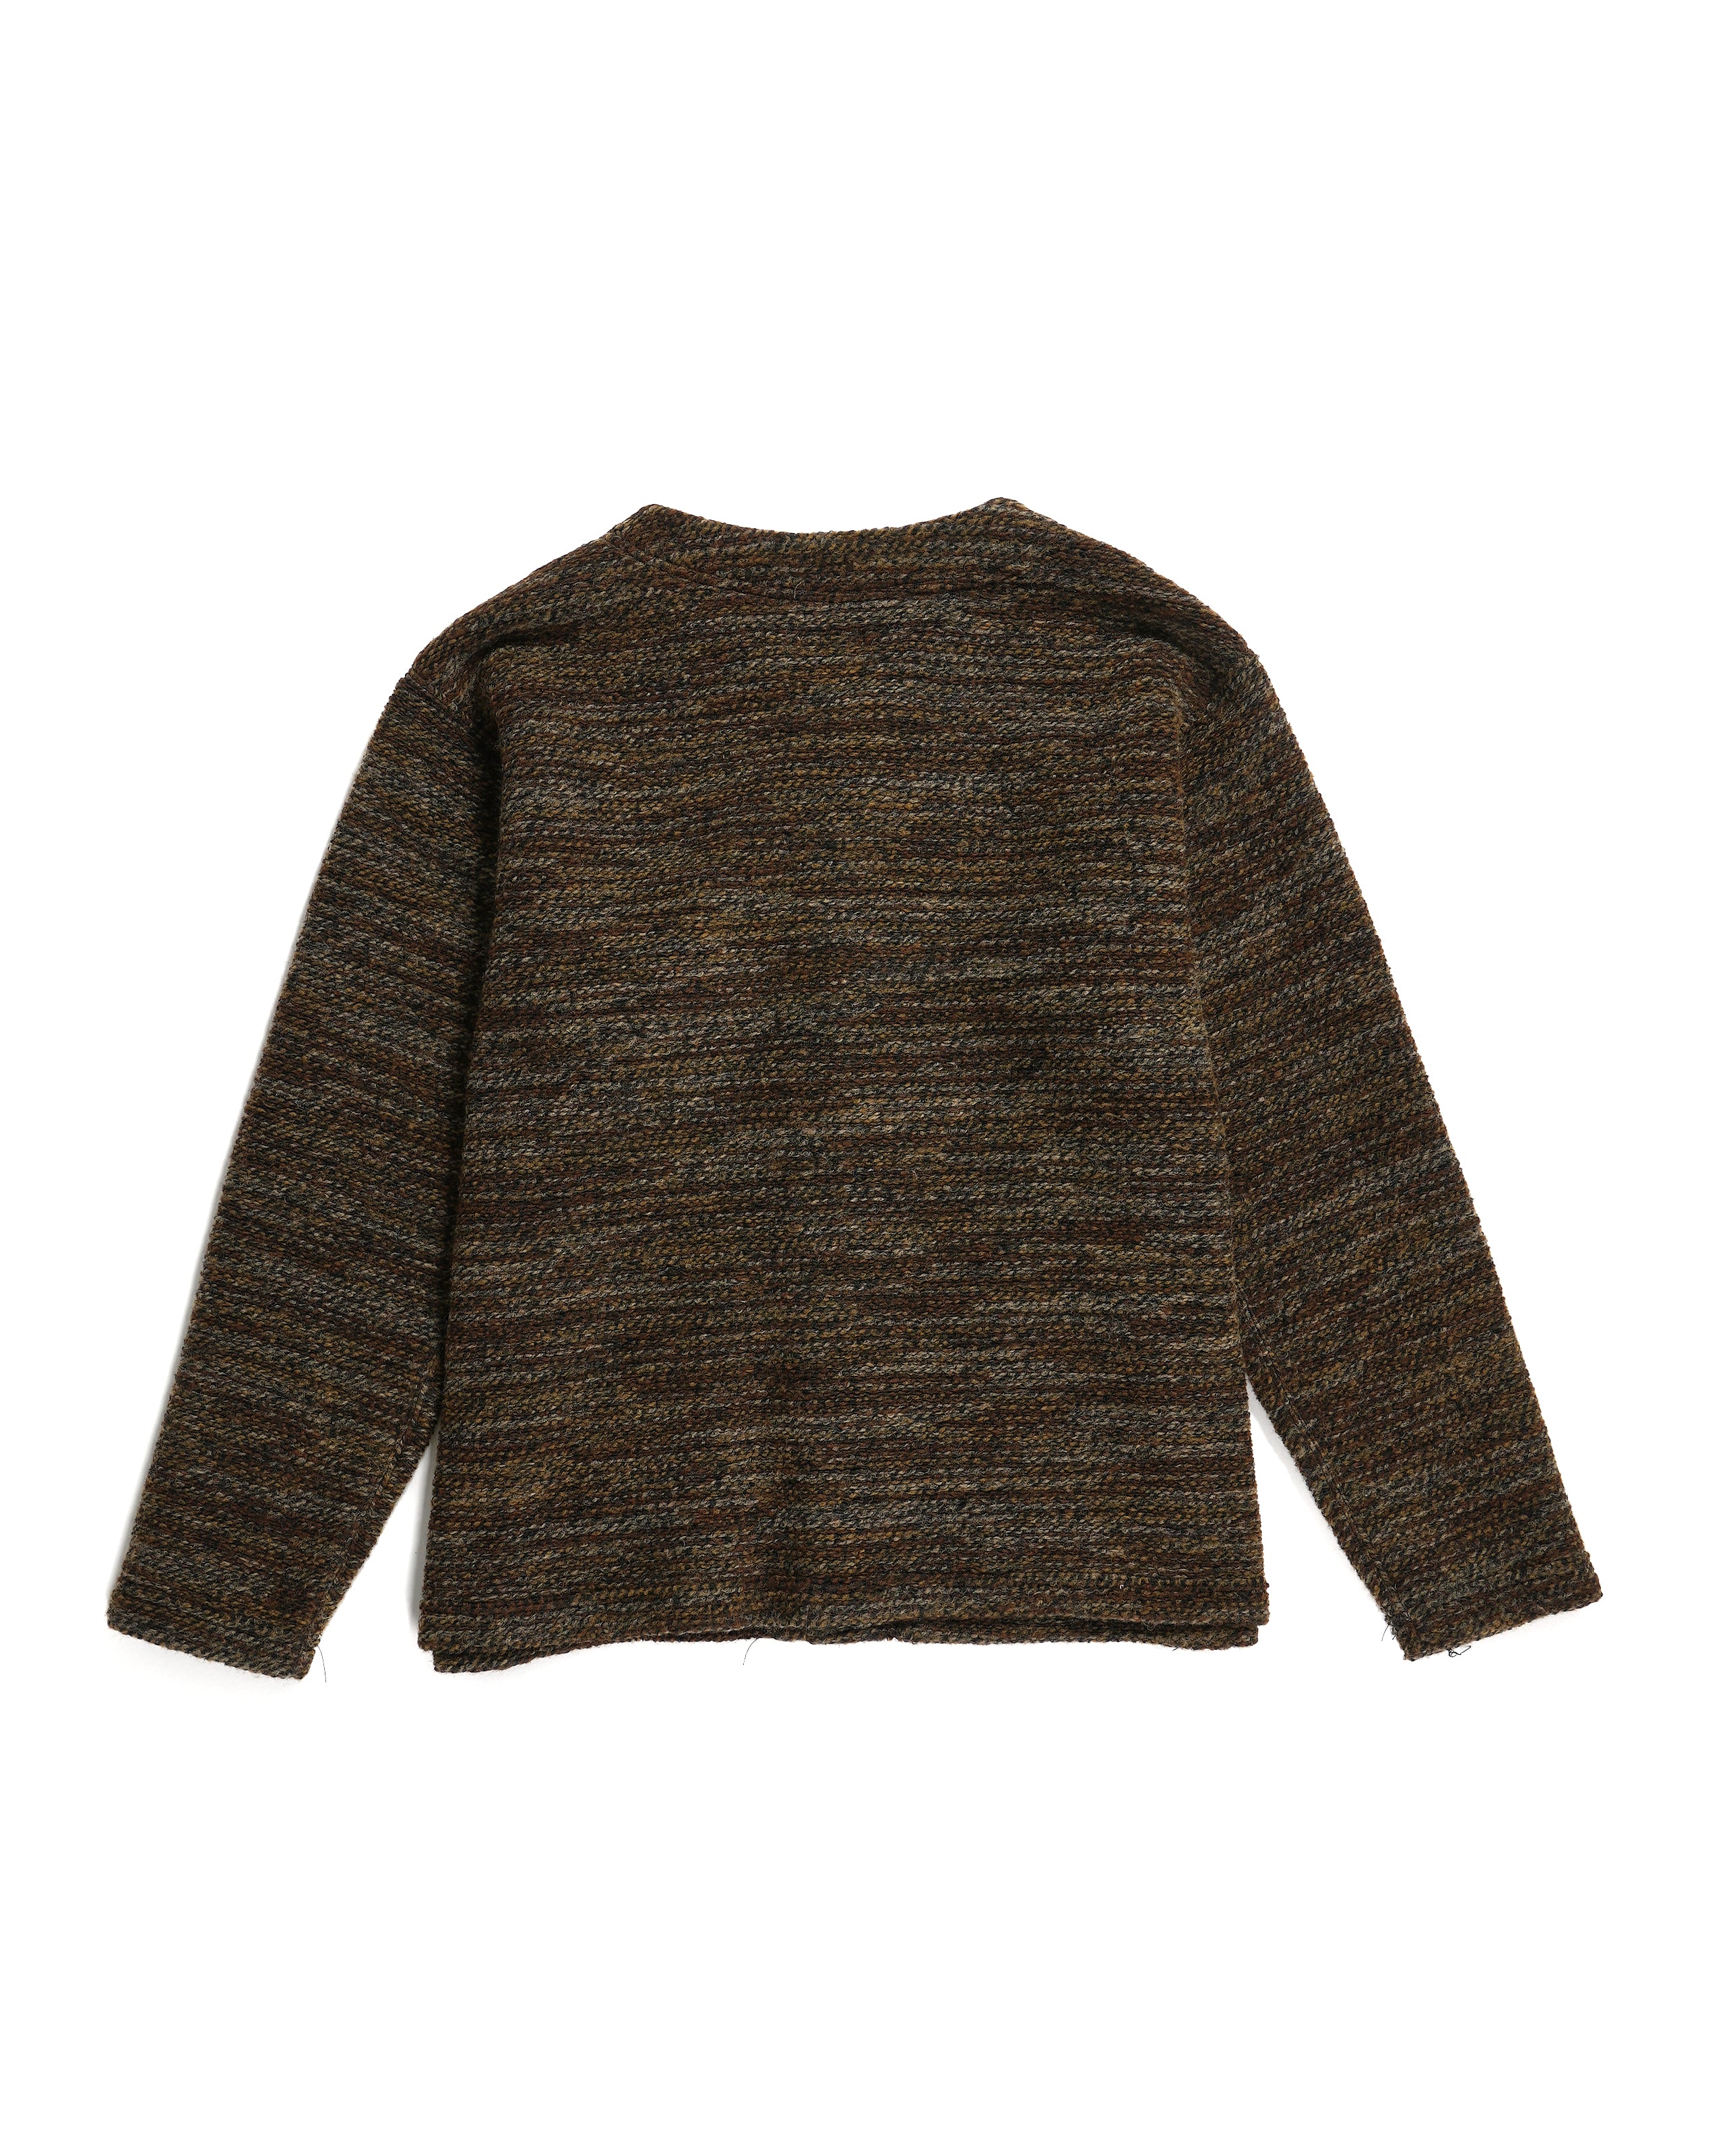 Knit Cardigan - Brown Poly Wool Melange Knit